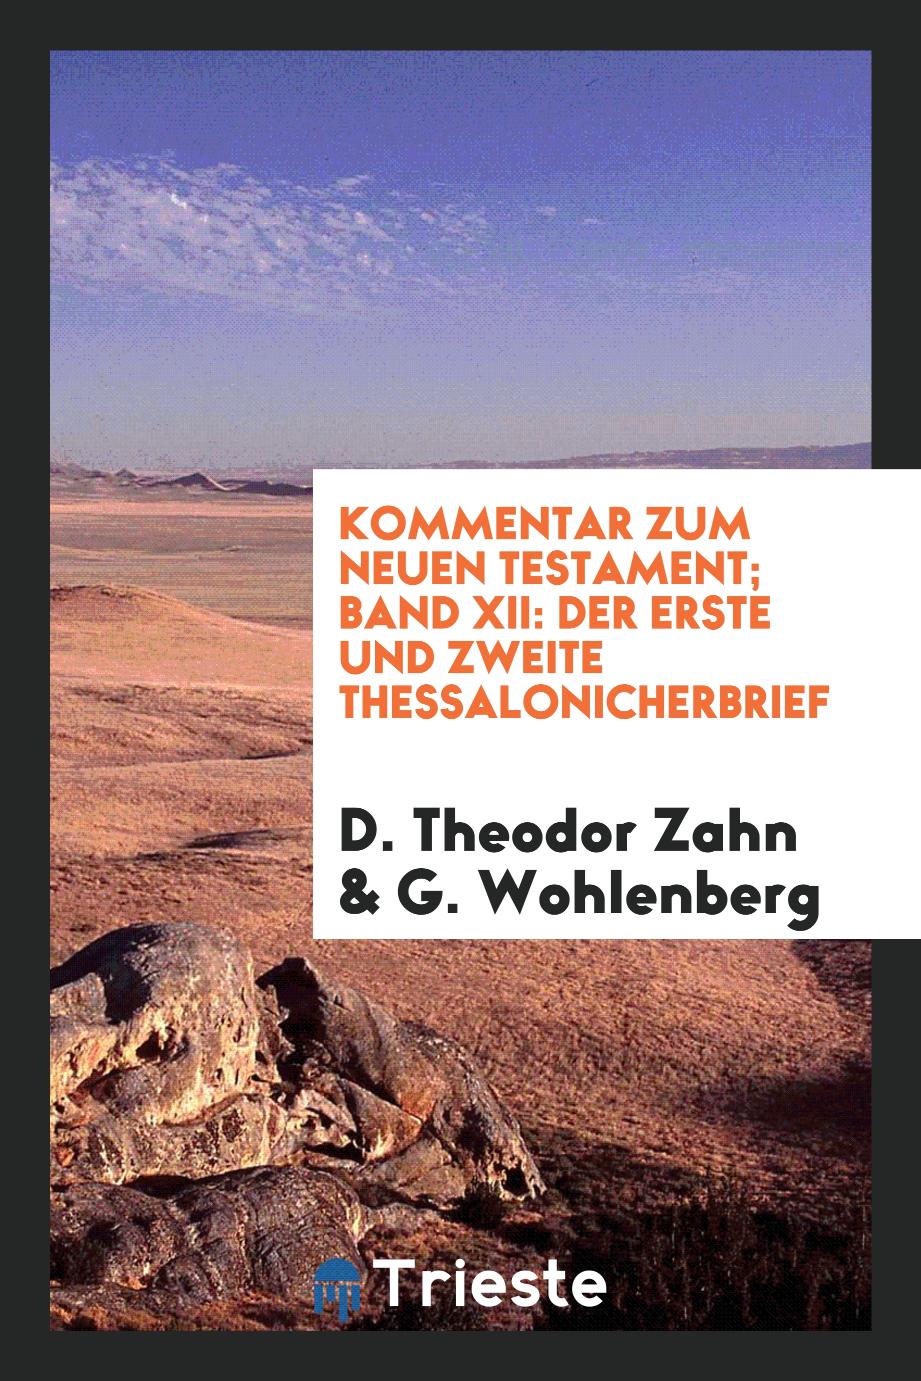 D. Theodor Zahn, G. Wohlenberg - Kommentar zum Neuen Testament; Band XII: Der Erste und Zweite Thessalonicherbrief